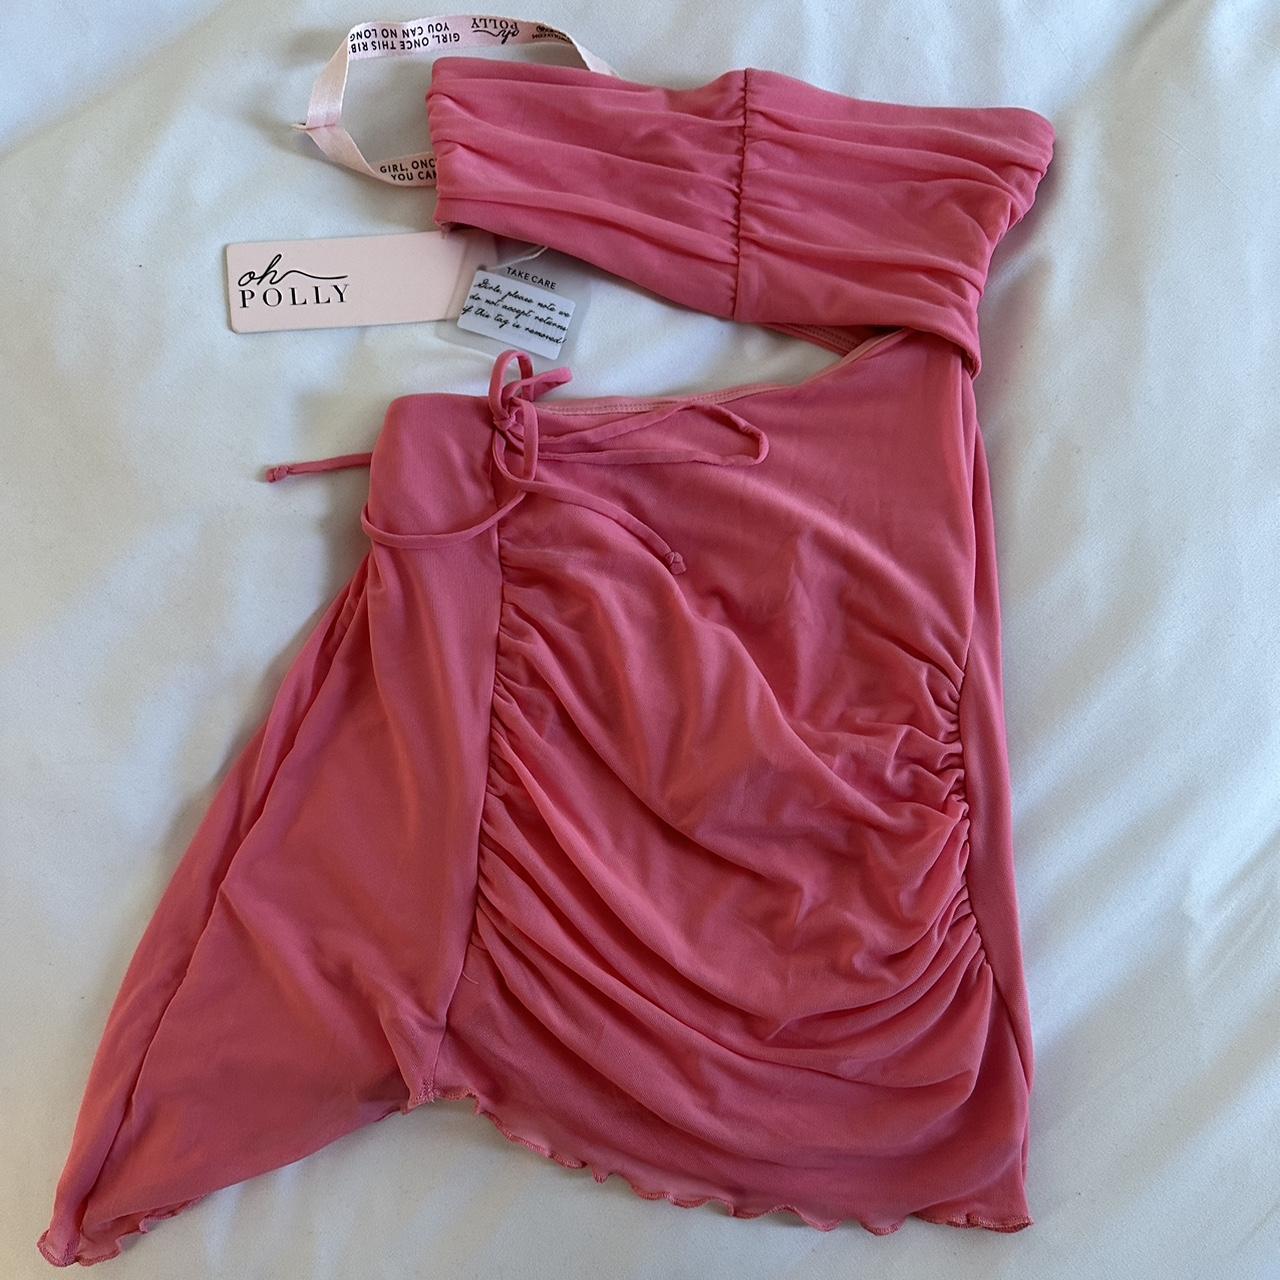 Oh Polly Women's Pink Dress | Depop